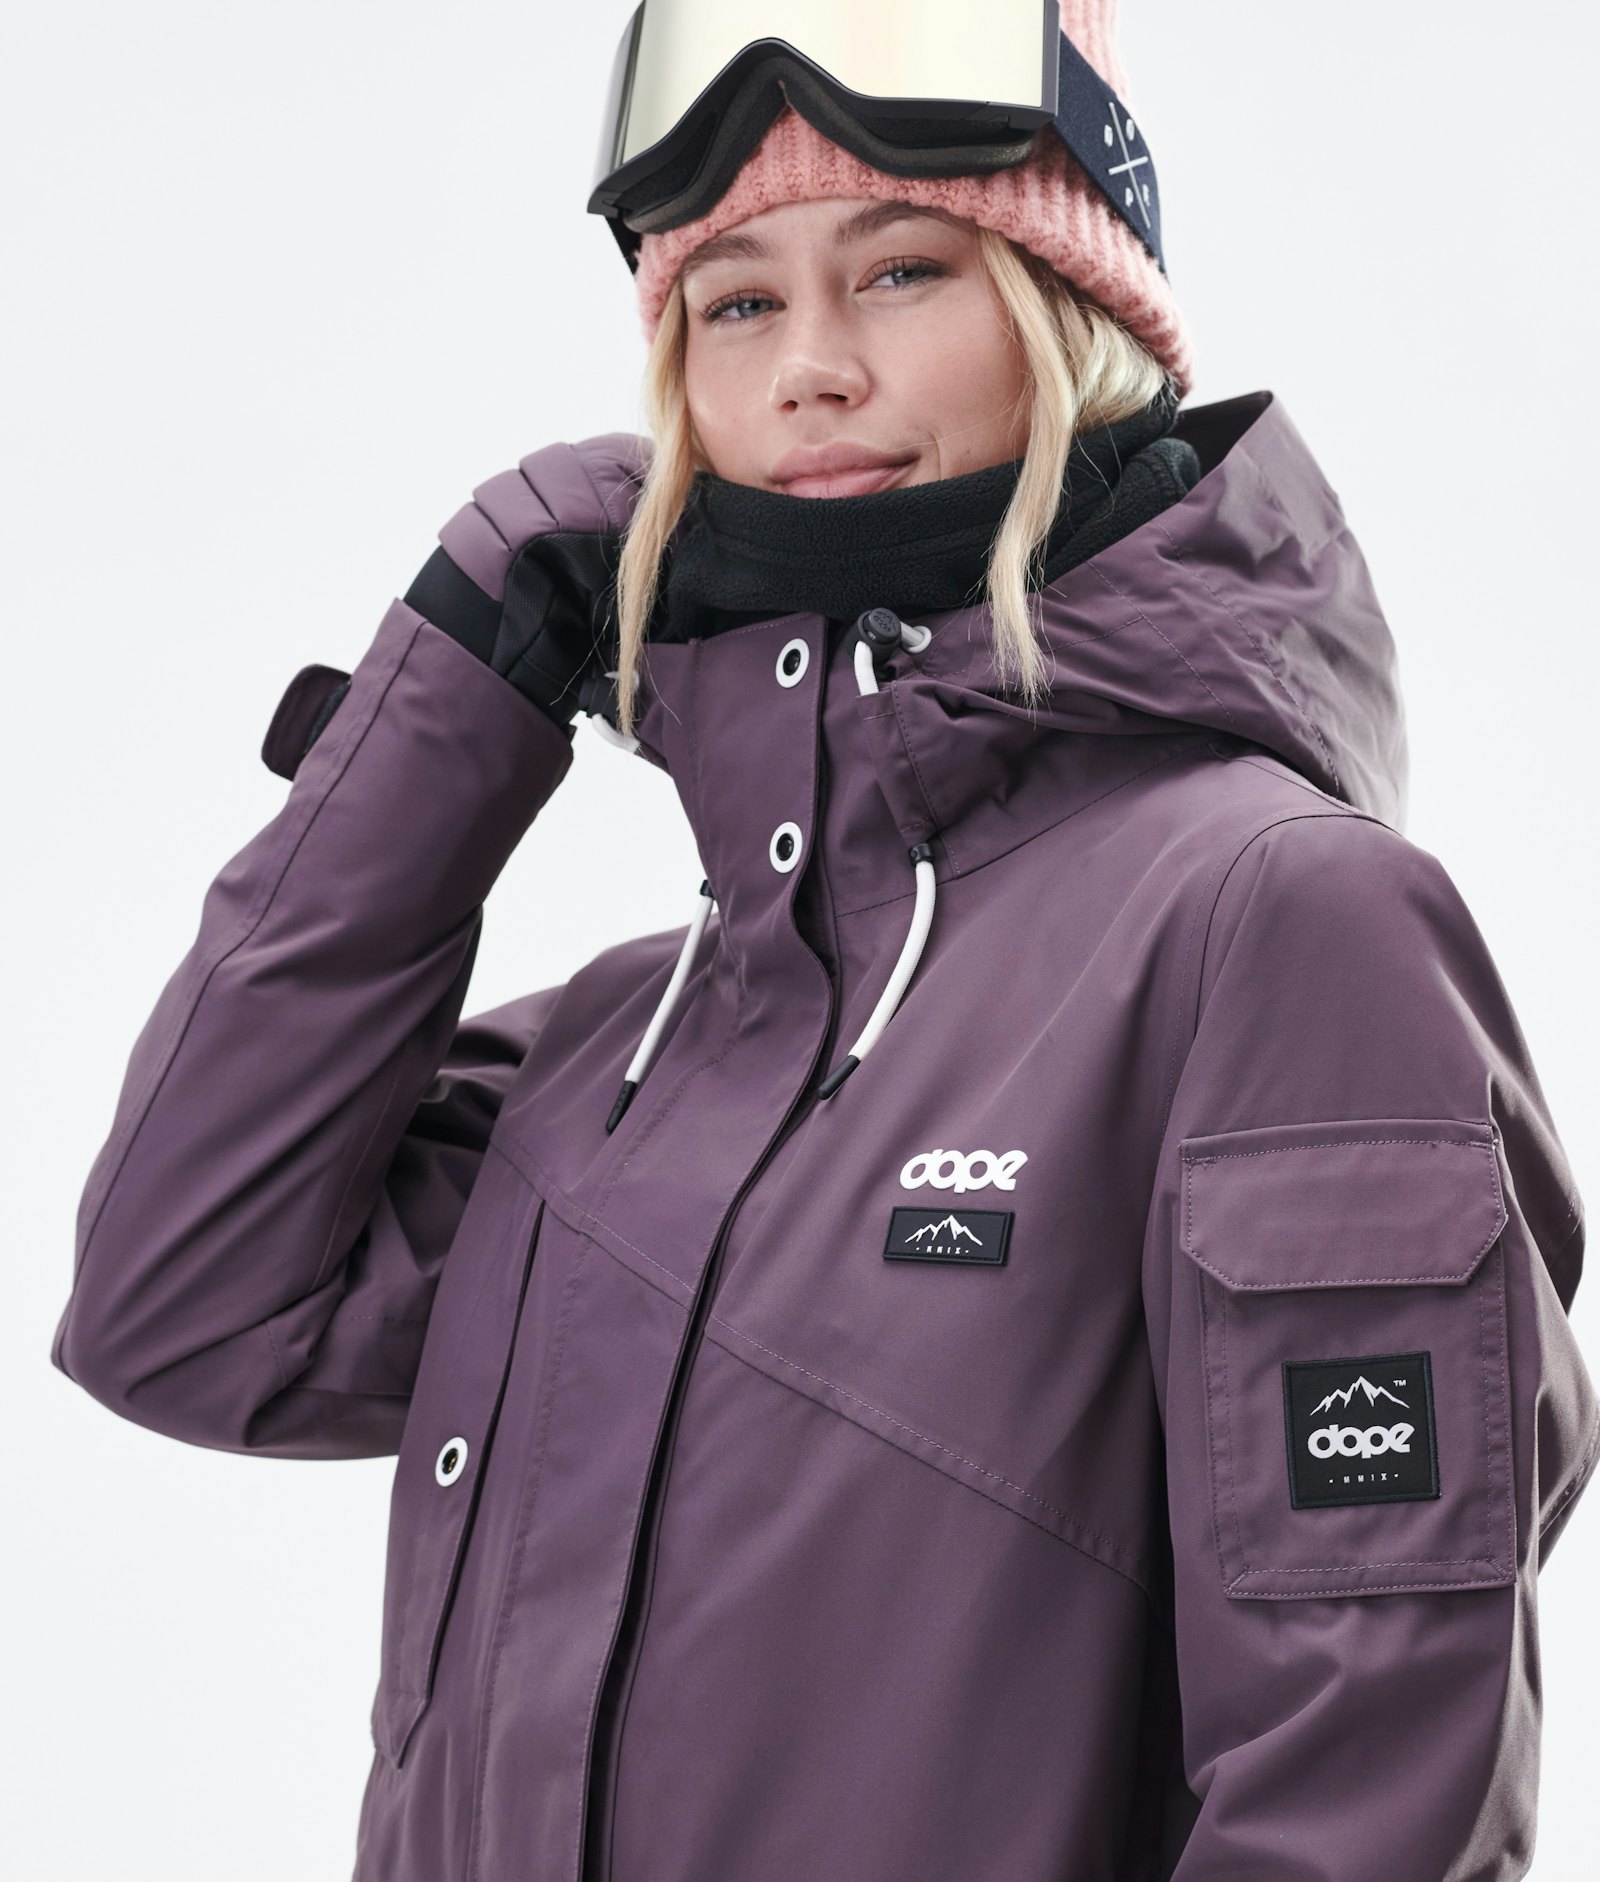 Dope Adept W 2020 Snowboardjacke Damen Faded Grape